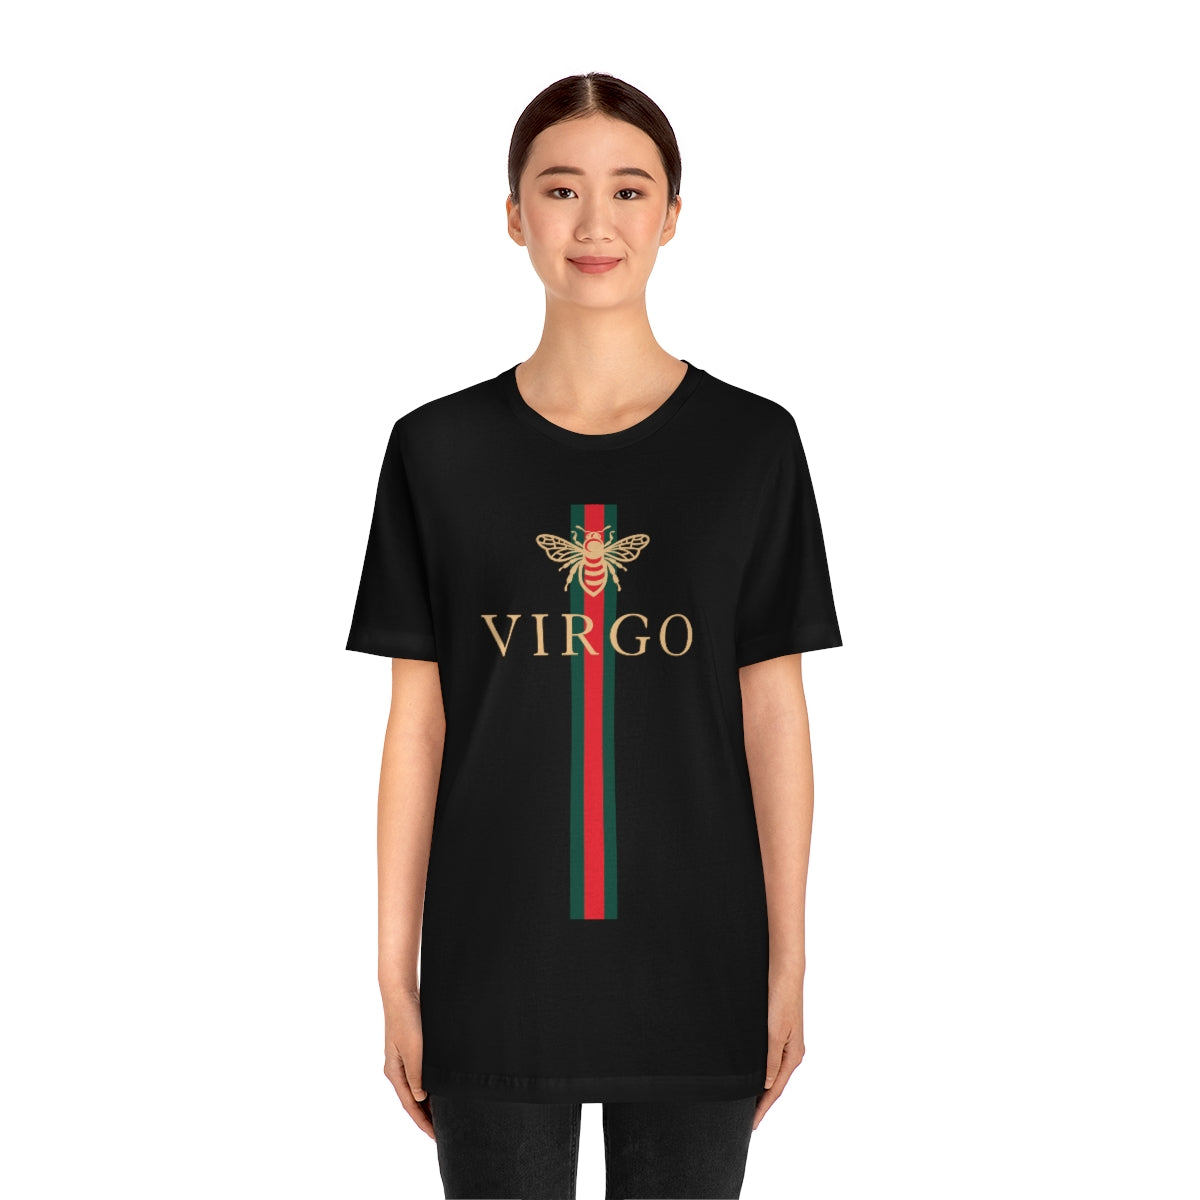 Virgo Bee Girl Shirt